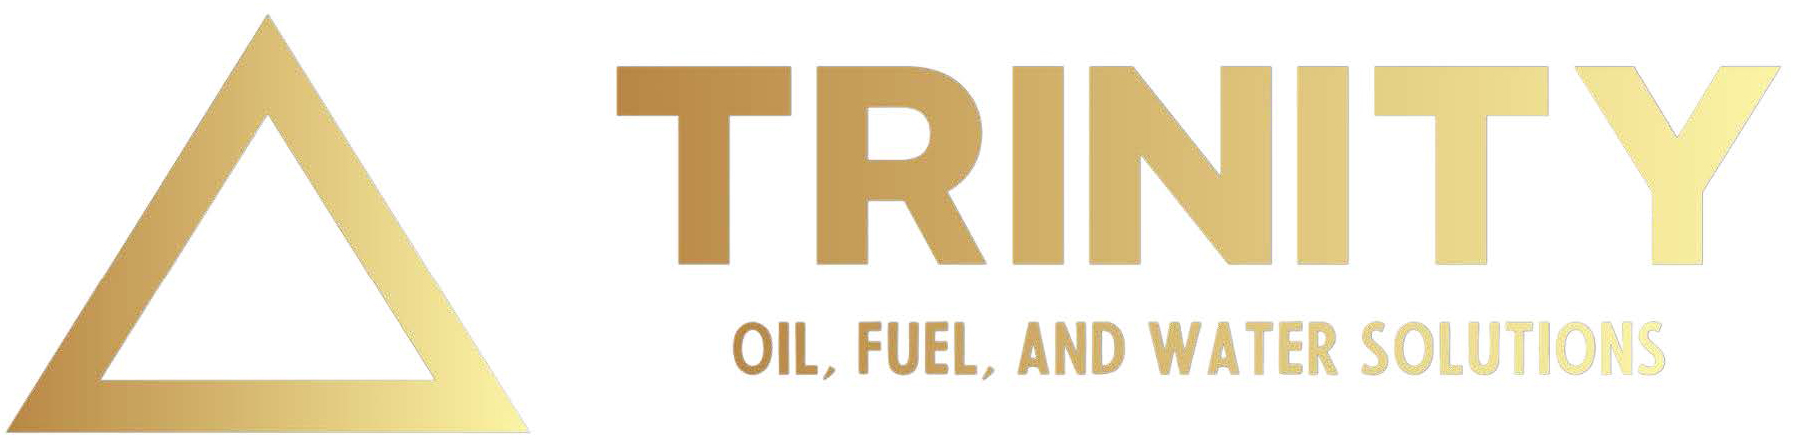 Trinity RSS logo